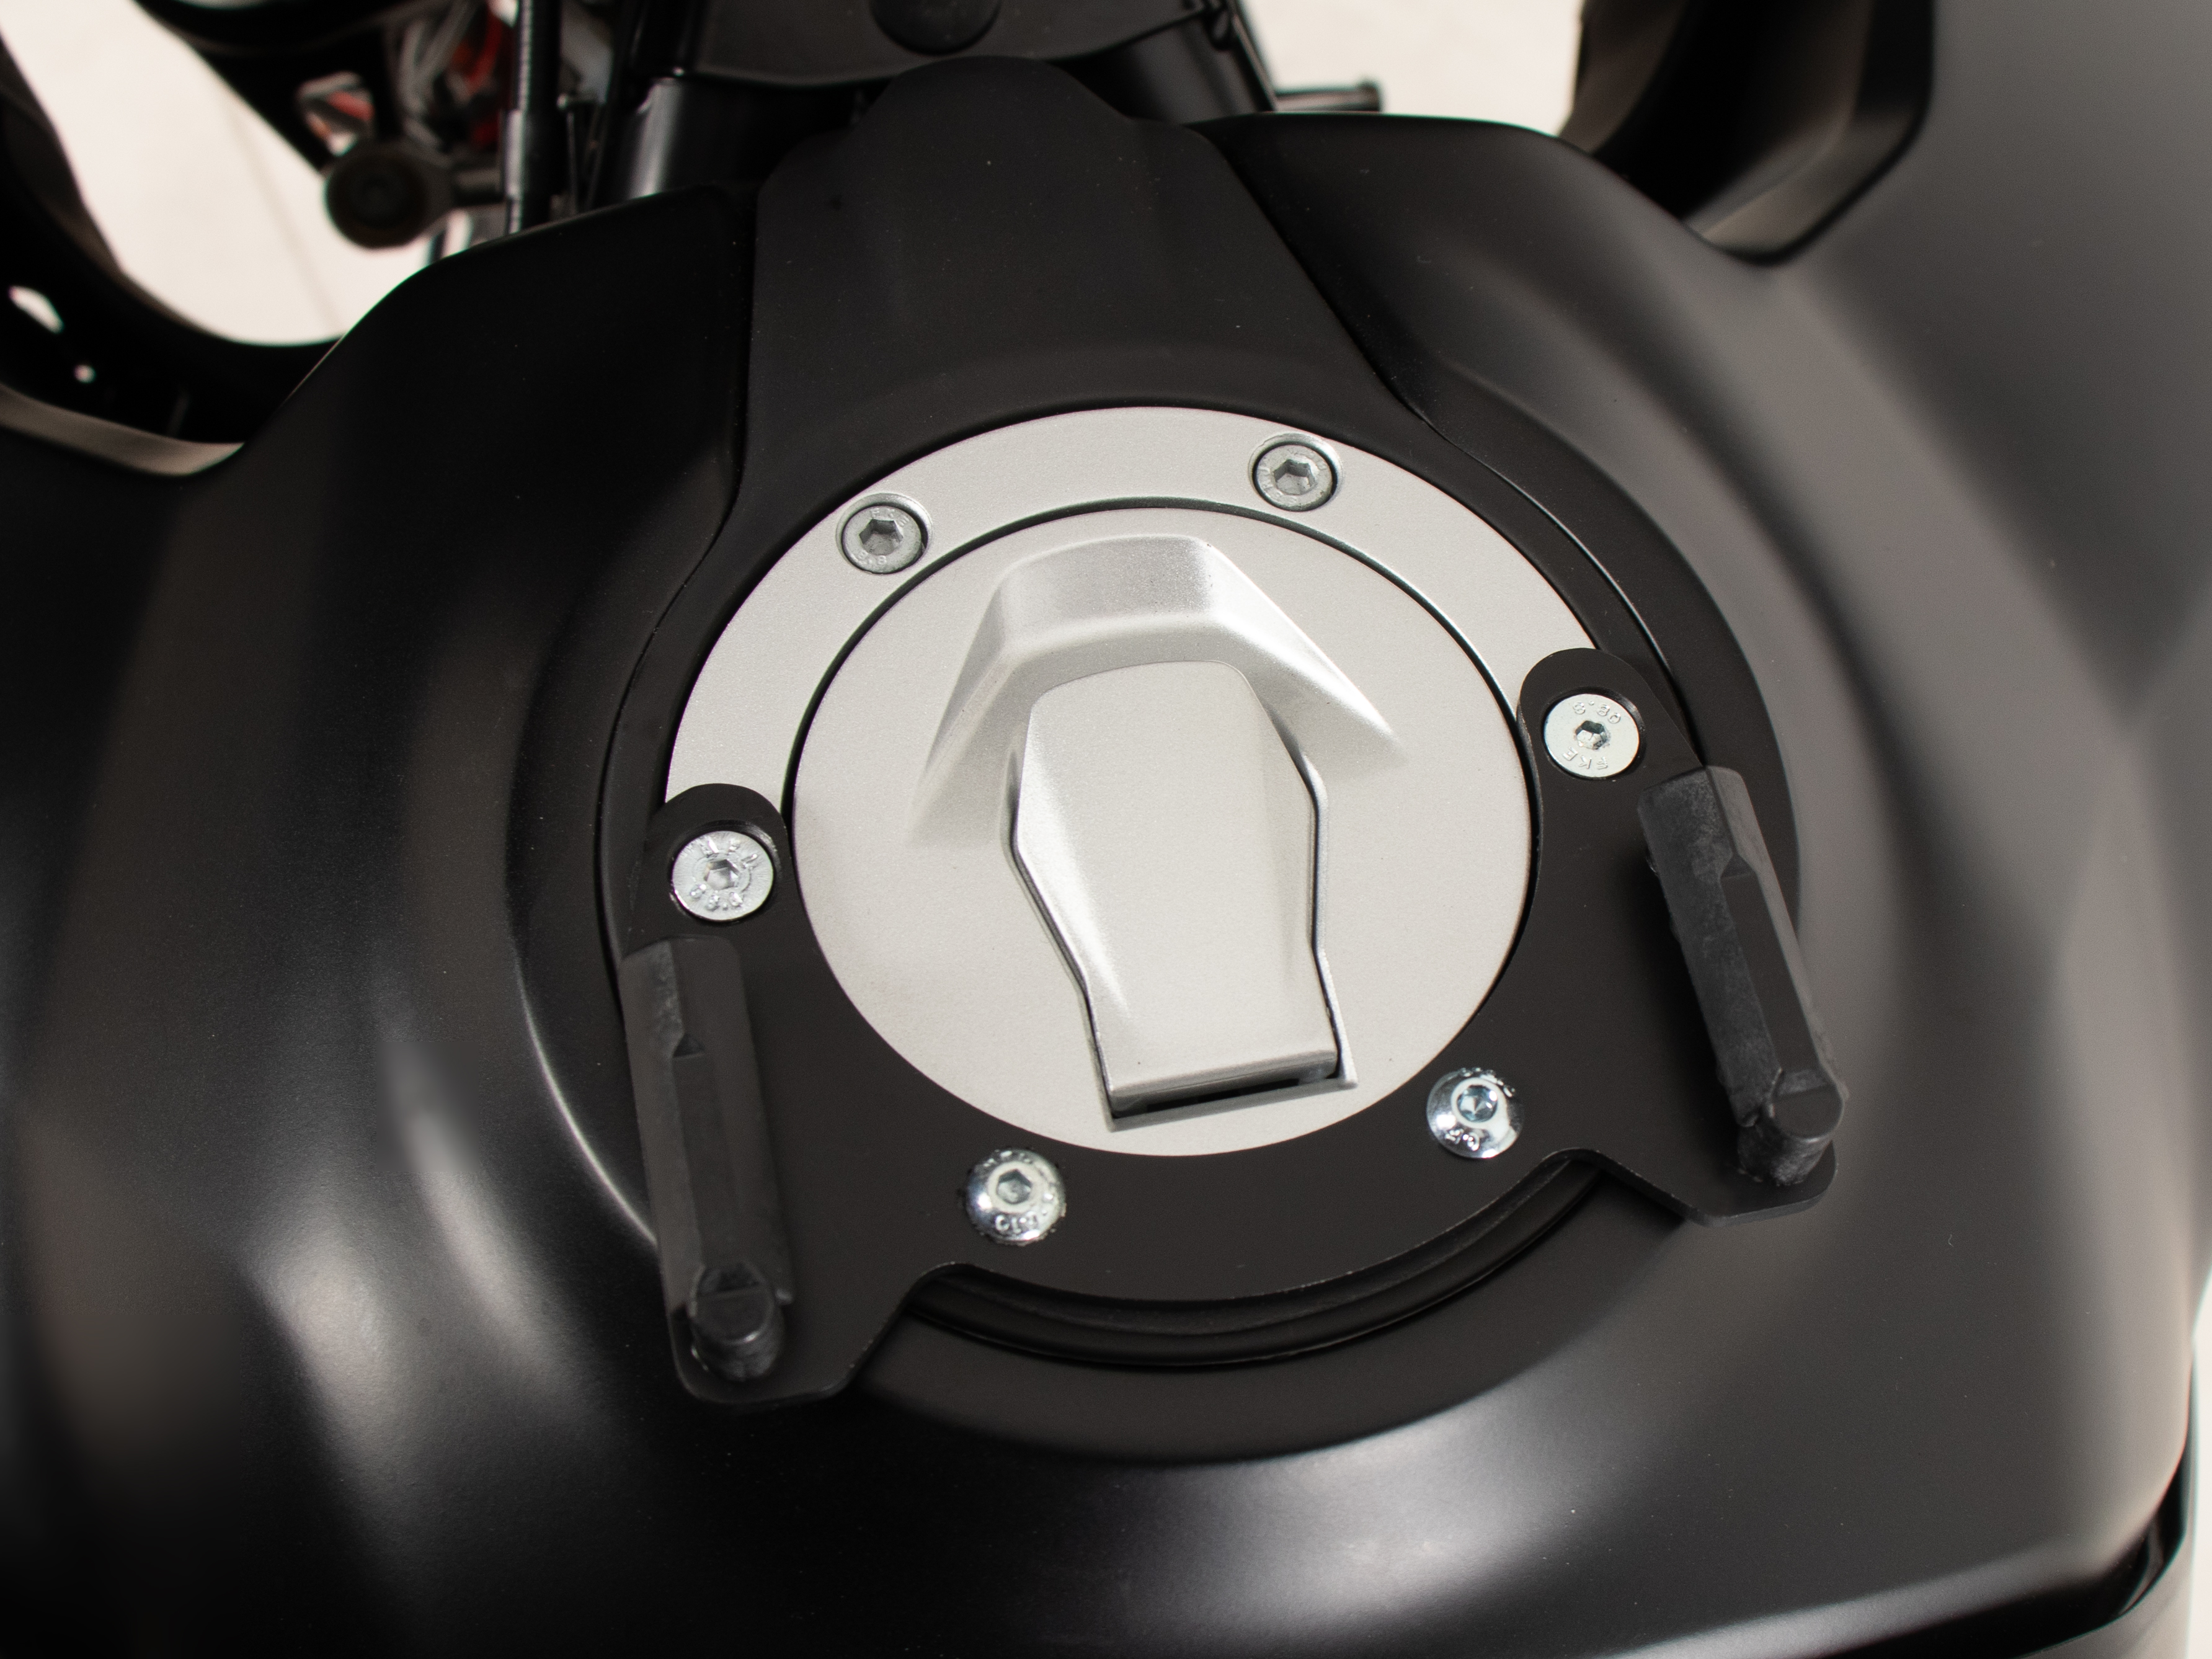 Tankring Lock-it inkl. Tankrucksackverschlusseinheit für KTM 390 Adventure (2020-)